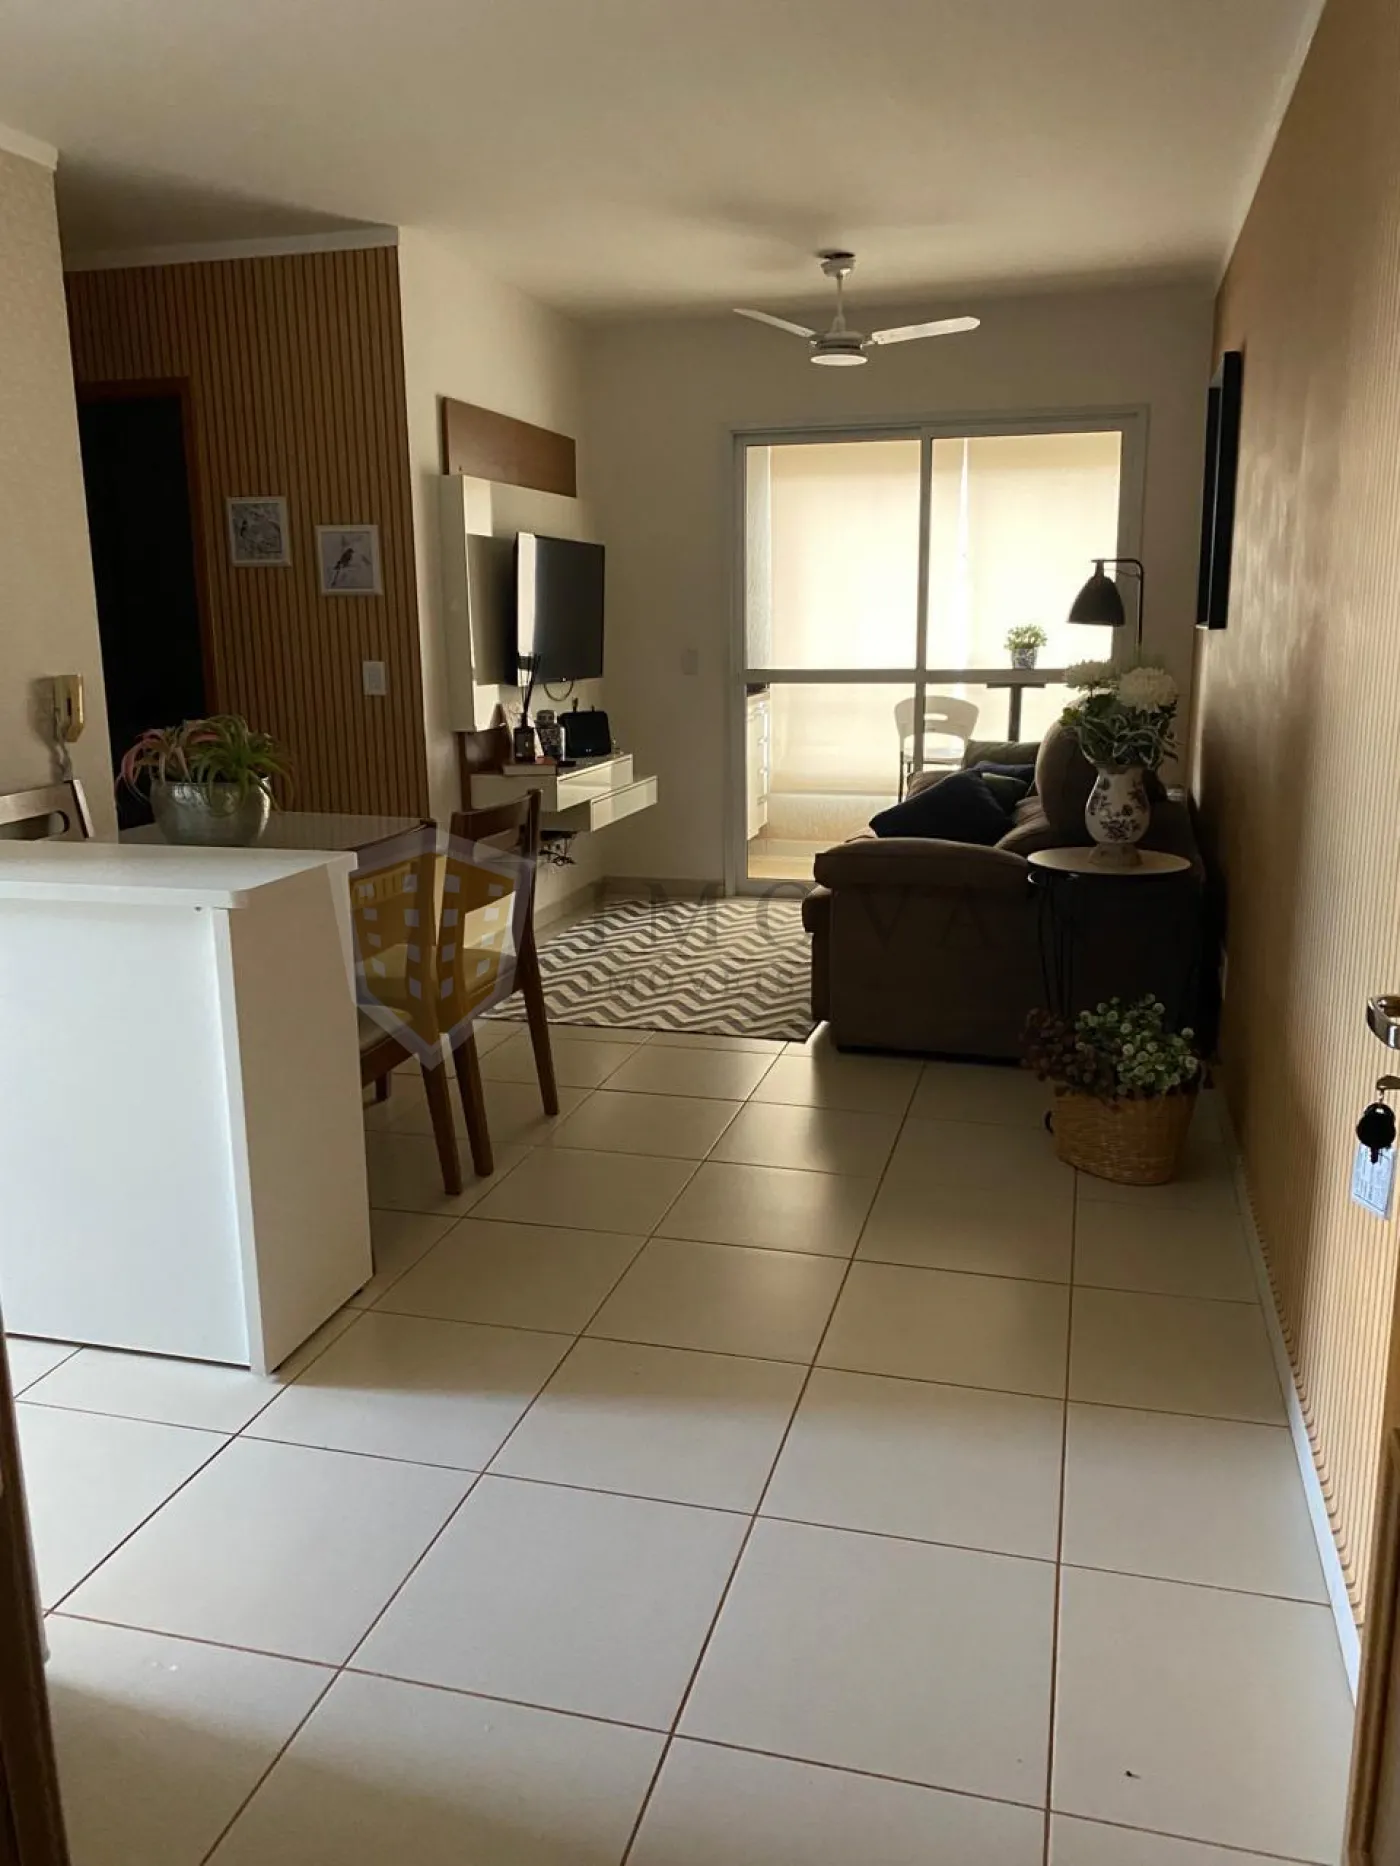 Alugar Apartamento / Padrão em Ribeirão Preto R$ 1.850,00 - Foto 2